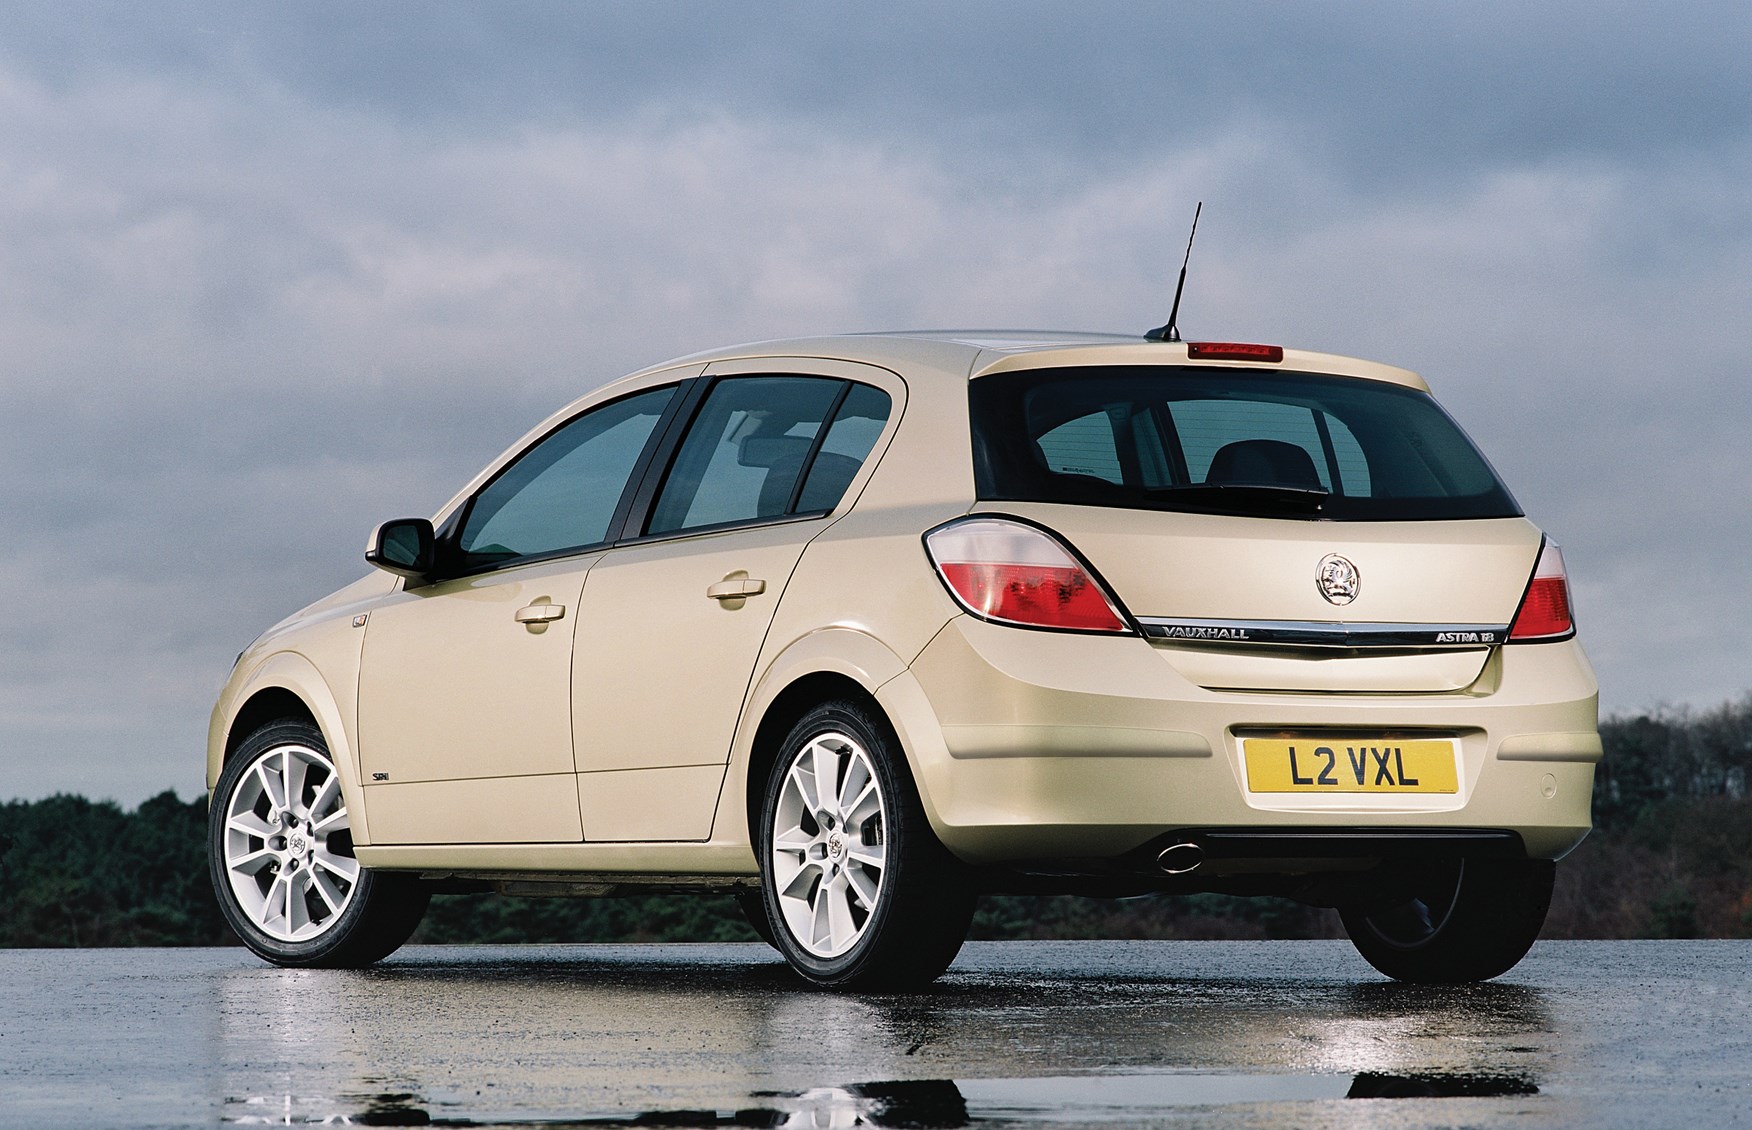 Купить в твери хэтчбек. Opel Astra 2004. Opel Astra 2005 хэтчбек. Opel Astra h 2005 хэтчбек. Opel Astra 2004 хэтчбек.